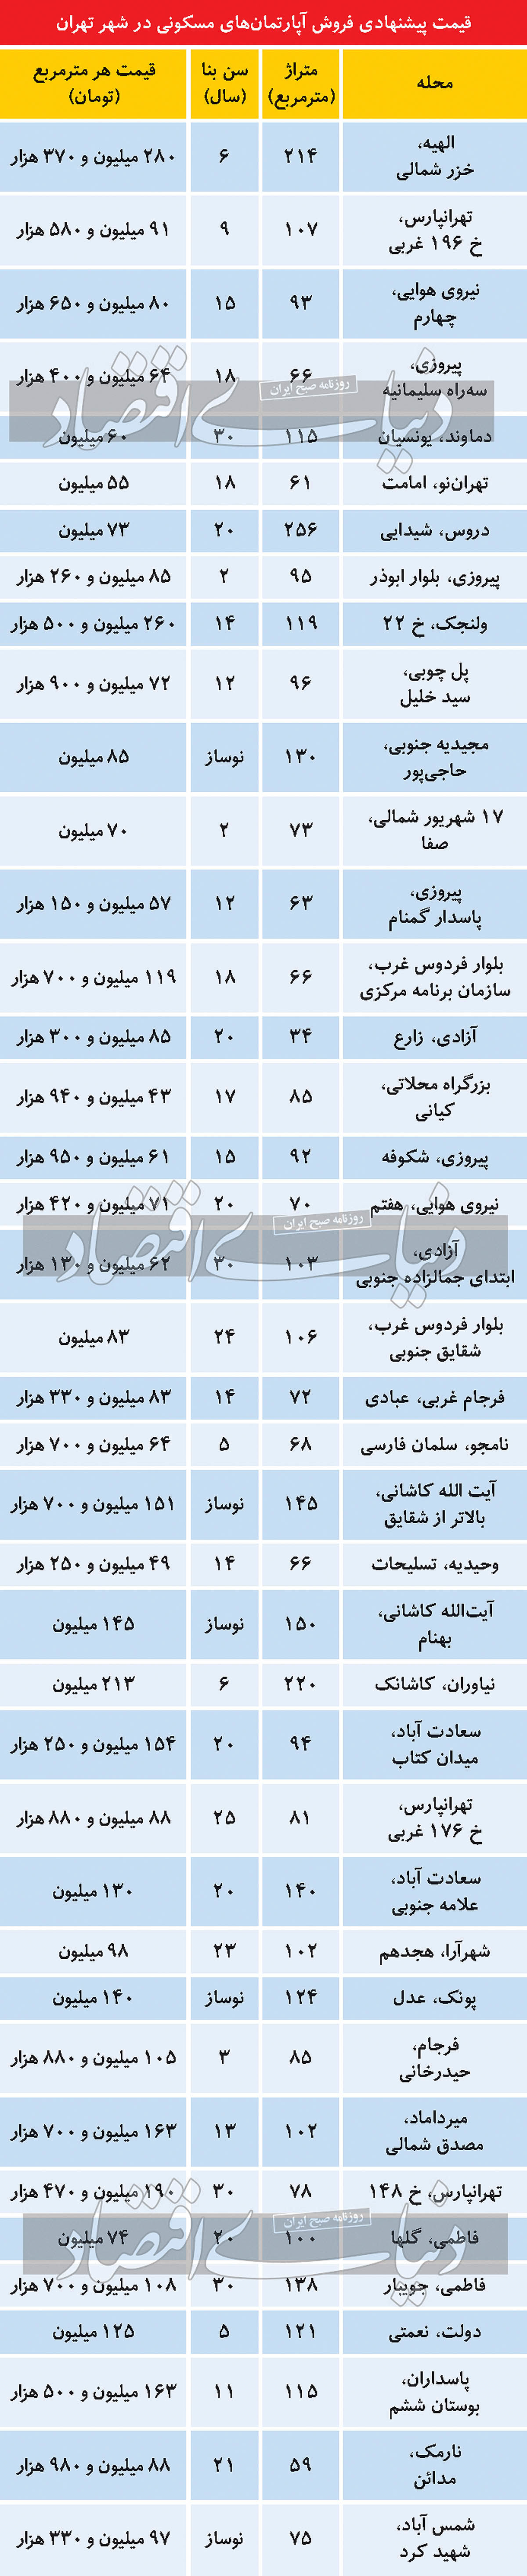 قیمت مسکن در برخی مناطق تهران کاهشی شد+ جدول 